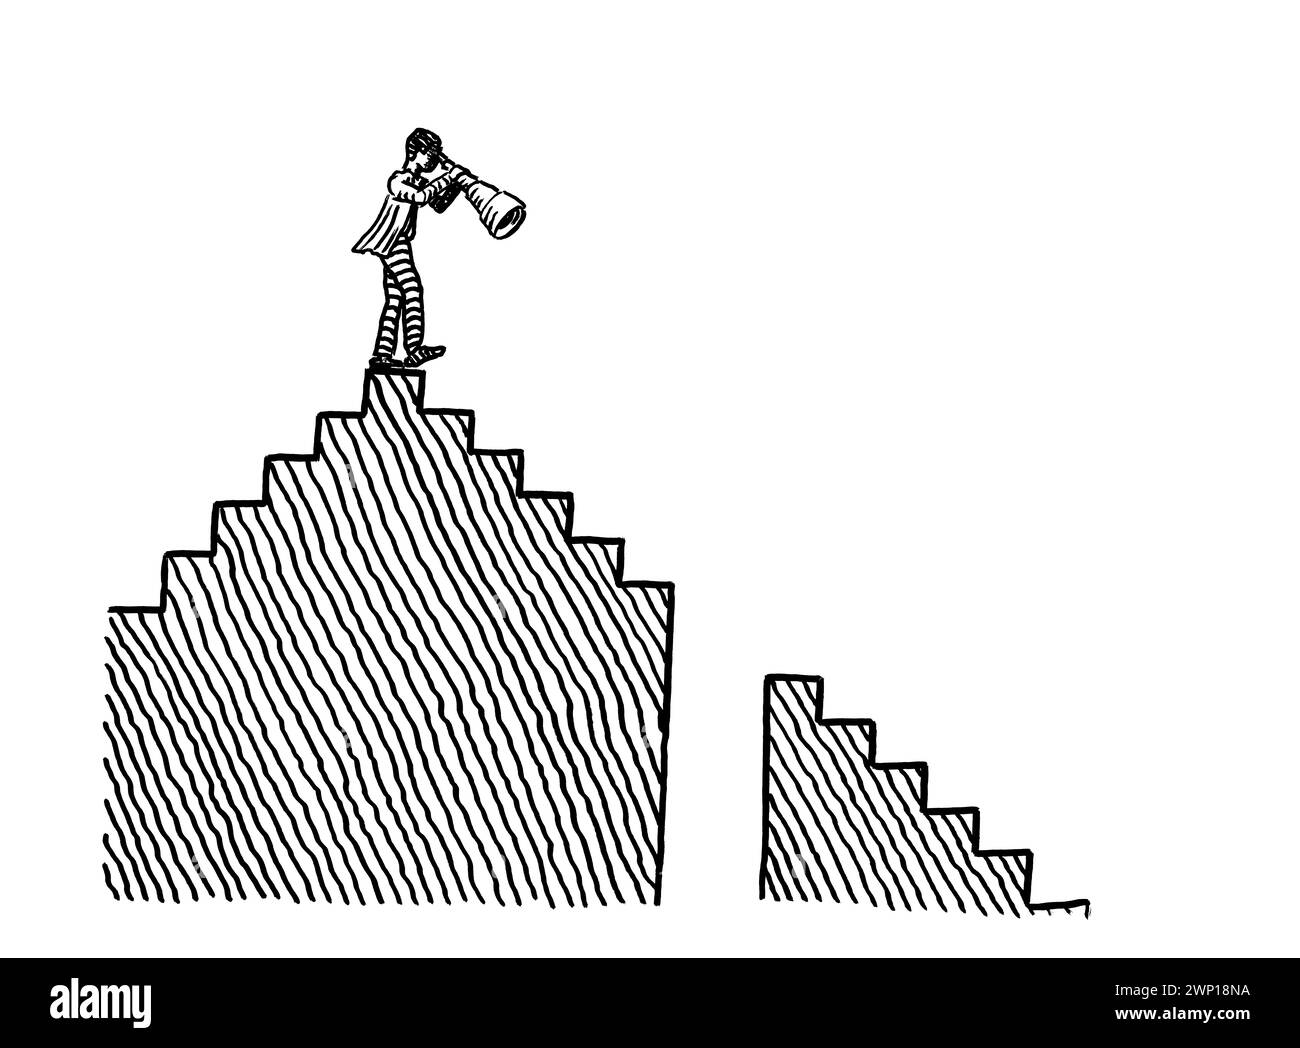 Freihändige Zeichnung eines Geschäftsmannes auf einer Treppe, der Schwierigkeiten auf dem absteigenden Weg vor einer Treppe beobachtet. Metapher für Planin Stockfoto